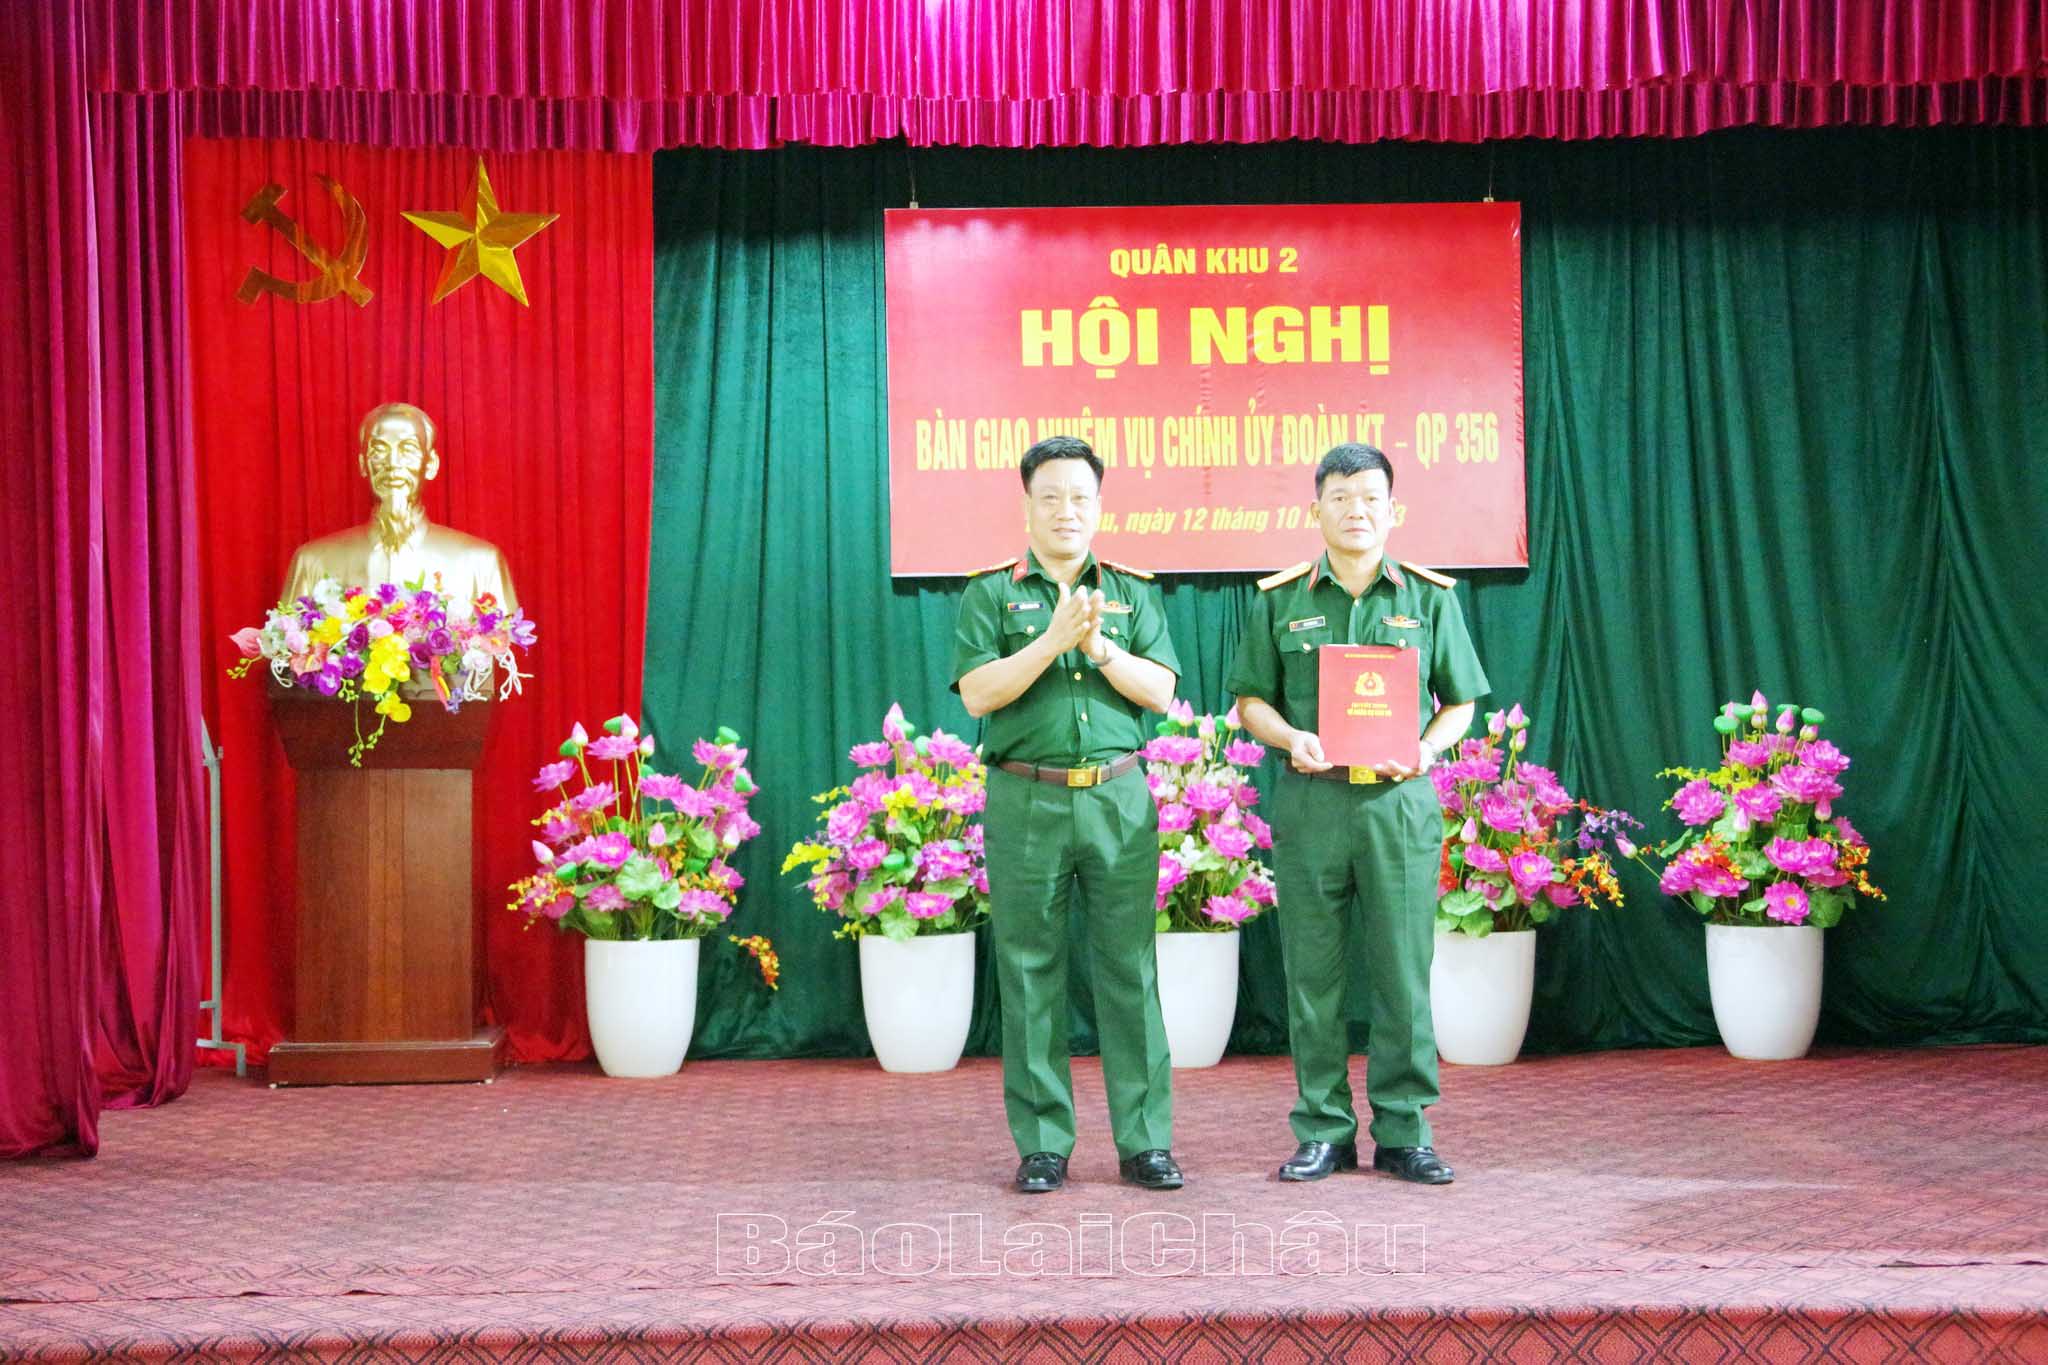 Đồng chí Đại tá Khổng Đình Tám - Chủ nhiệm Chính trị Quân khu II trao quyết định về công tác cán bộ cho đồng chí Thượng tá Lê Hoàng Mai.